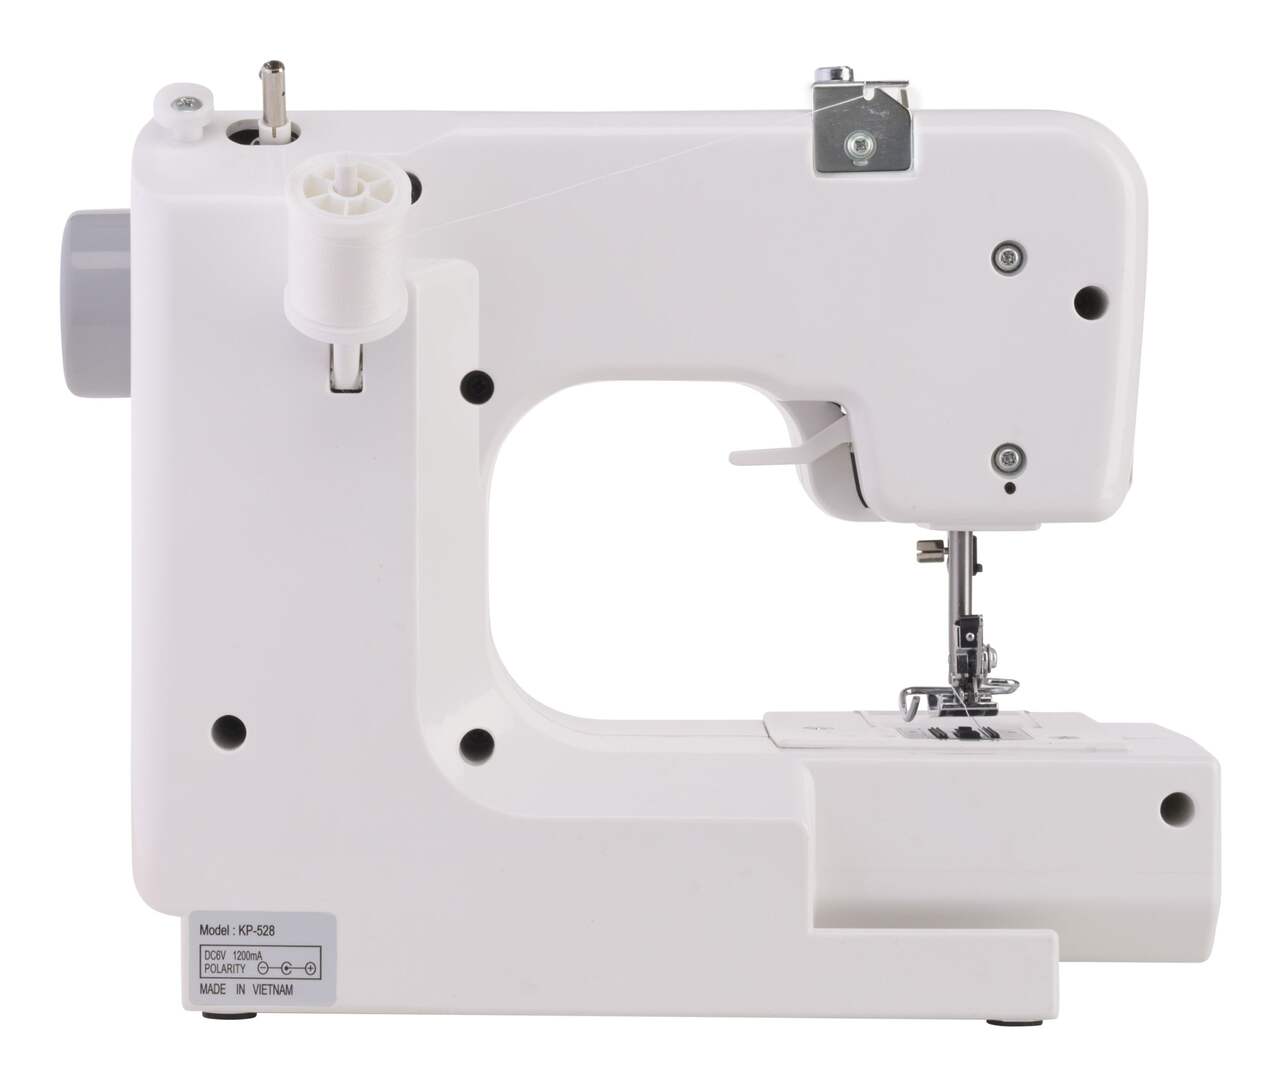 Singer M1000 sewing machine